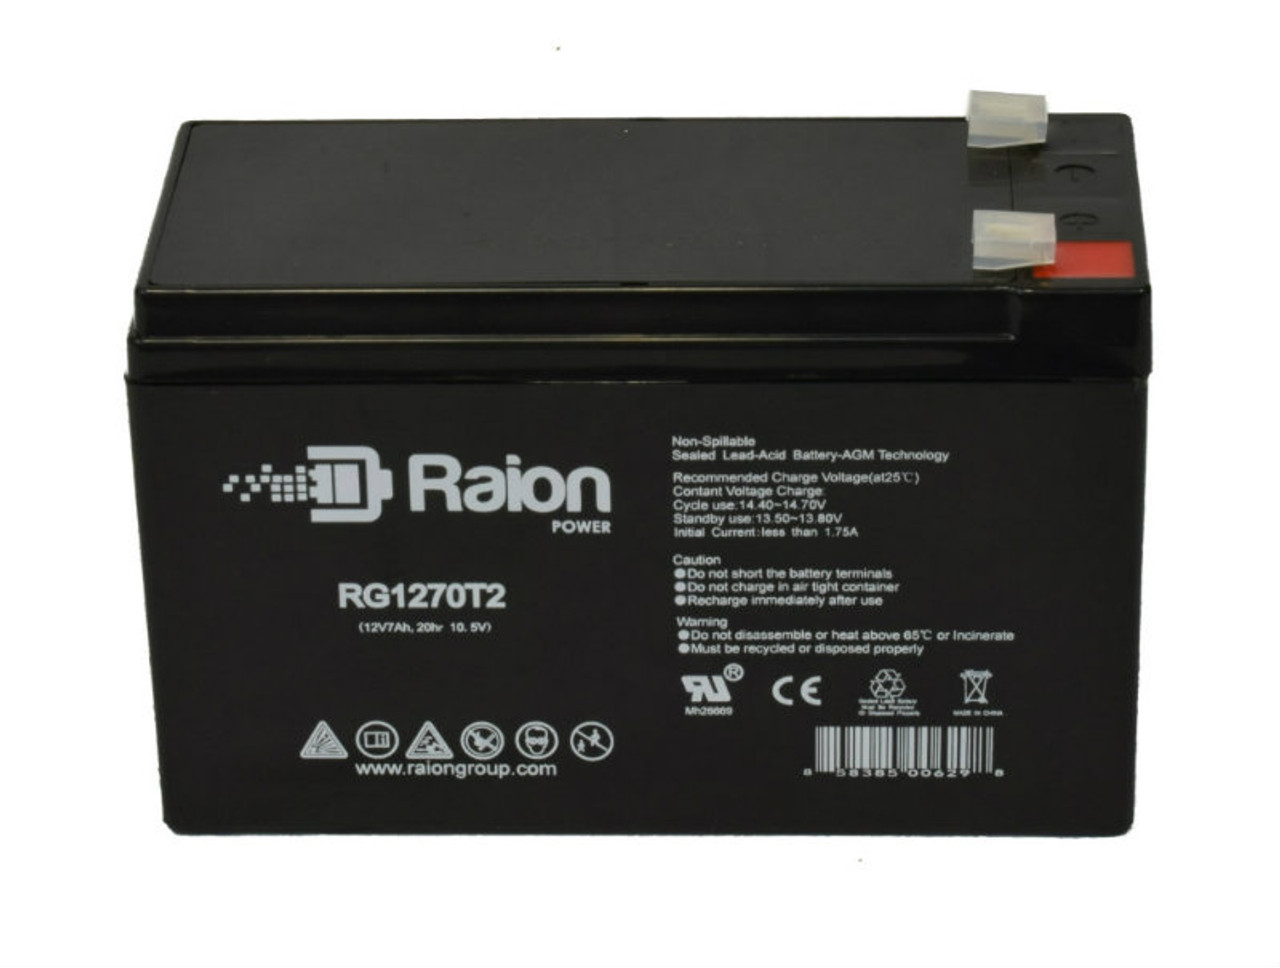 Raion Power RG1270T2 12V 7Ah Lead Acid Battery for Stannah Siena 600 Straight Stairlift